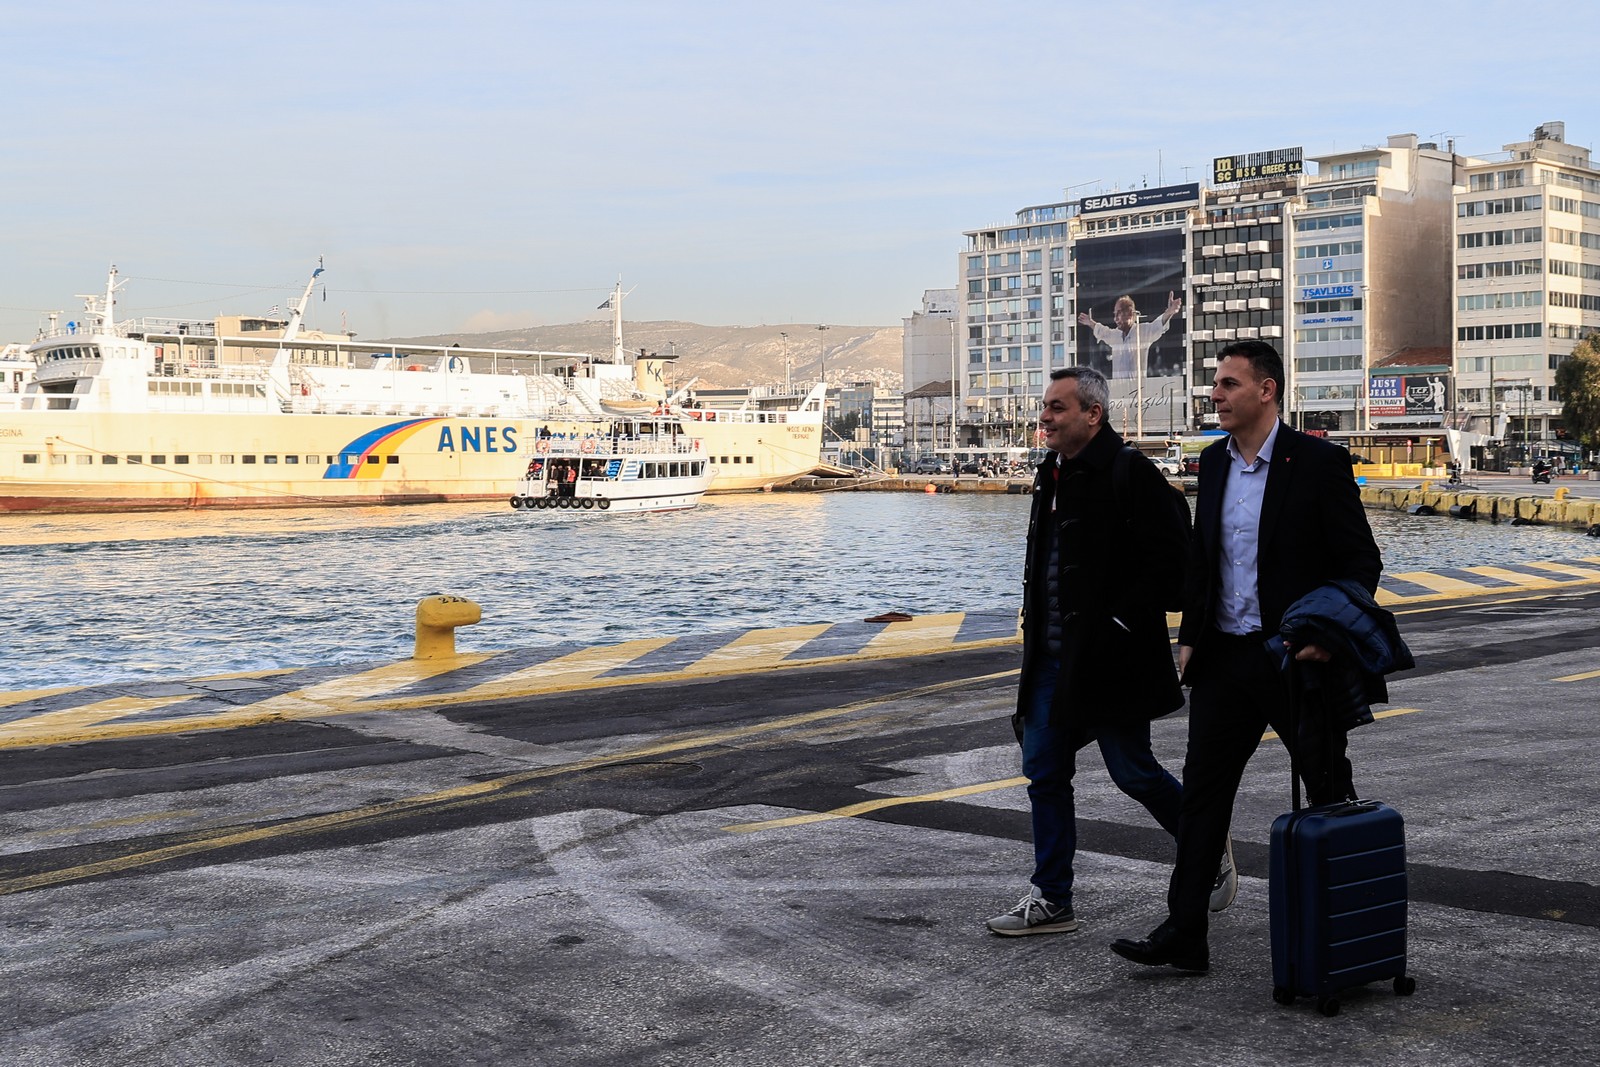 Στιγμιότυπο από το λιμάνι του Πειραιά, όπου βουλευτές του ΣΥΡΙΖΑ - Προοδευτική Συμμαχία αναχωρούν για τις Σπέτσες, όπου πρόκειται να συνεδριάσει η Κοινοβουλευτική Ομάδα του κόμματος